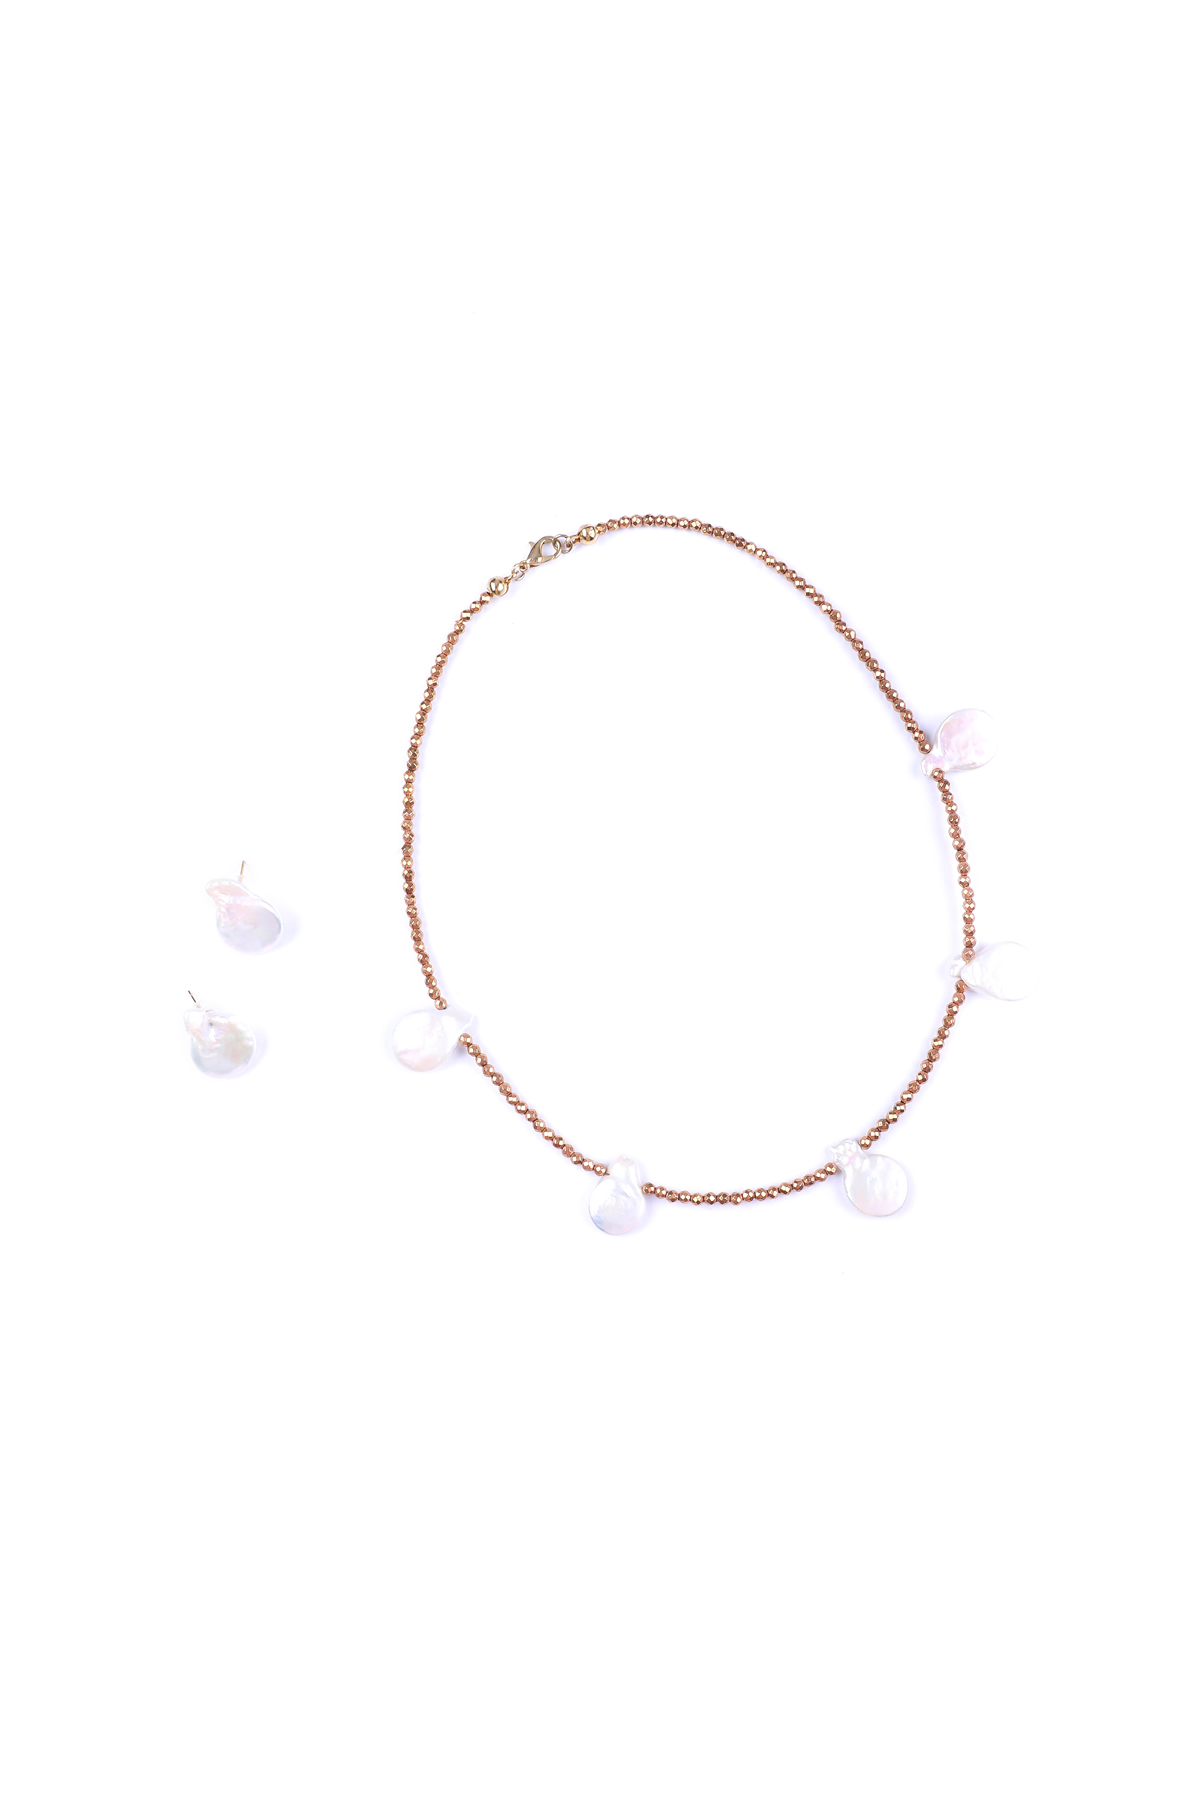 5 Perlas. Collar corto de Perla cultivada y Hematita